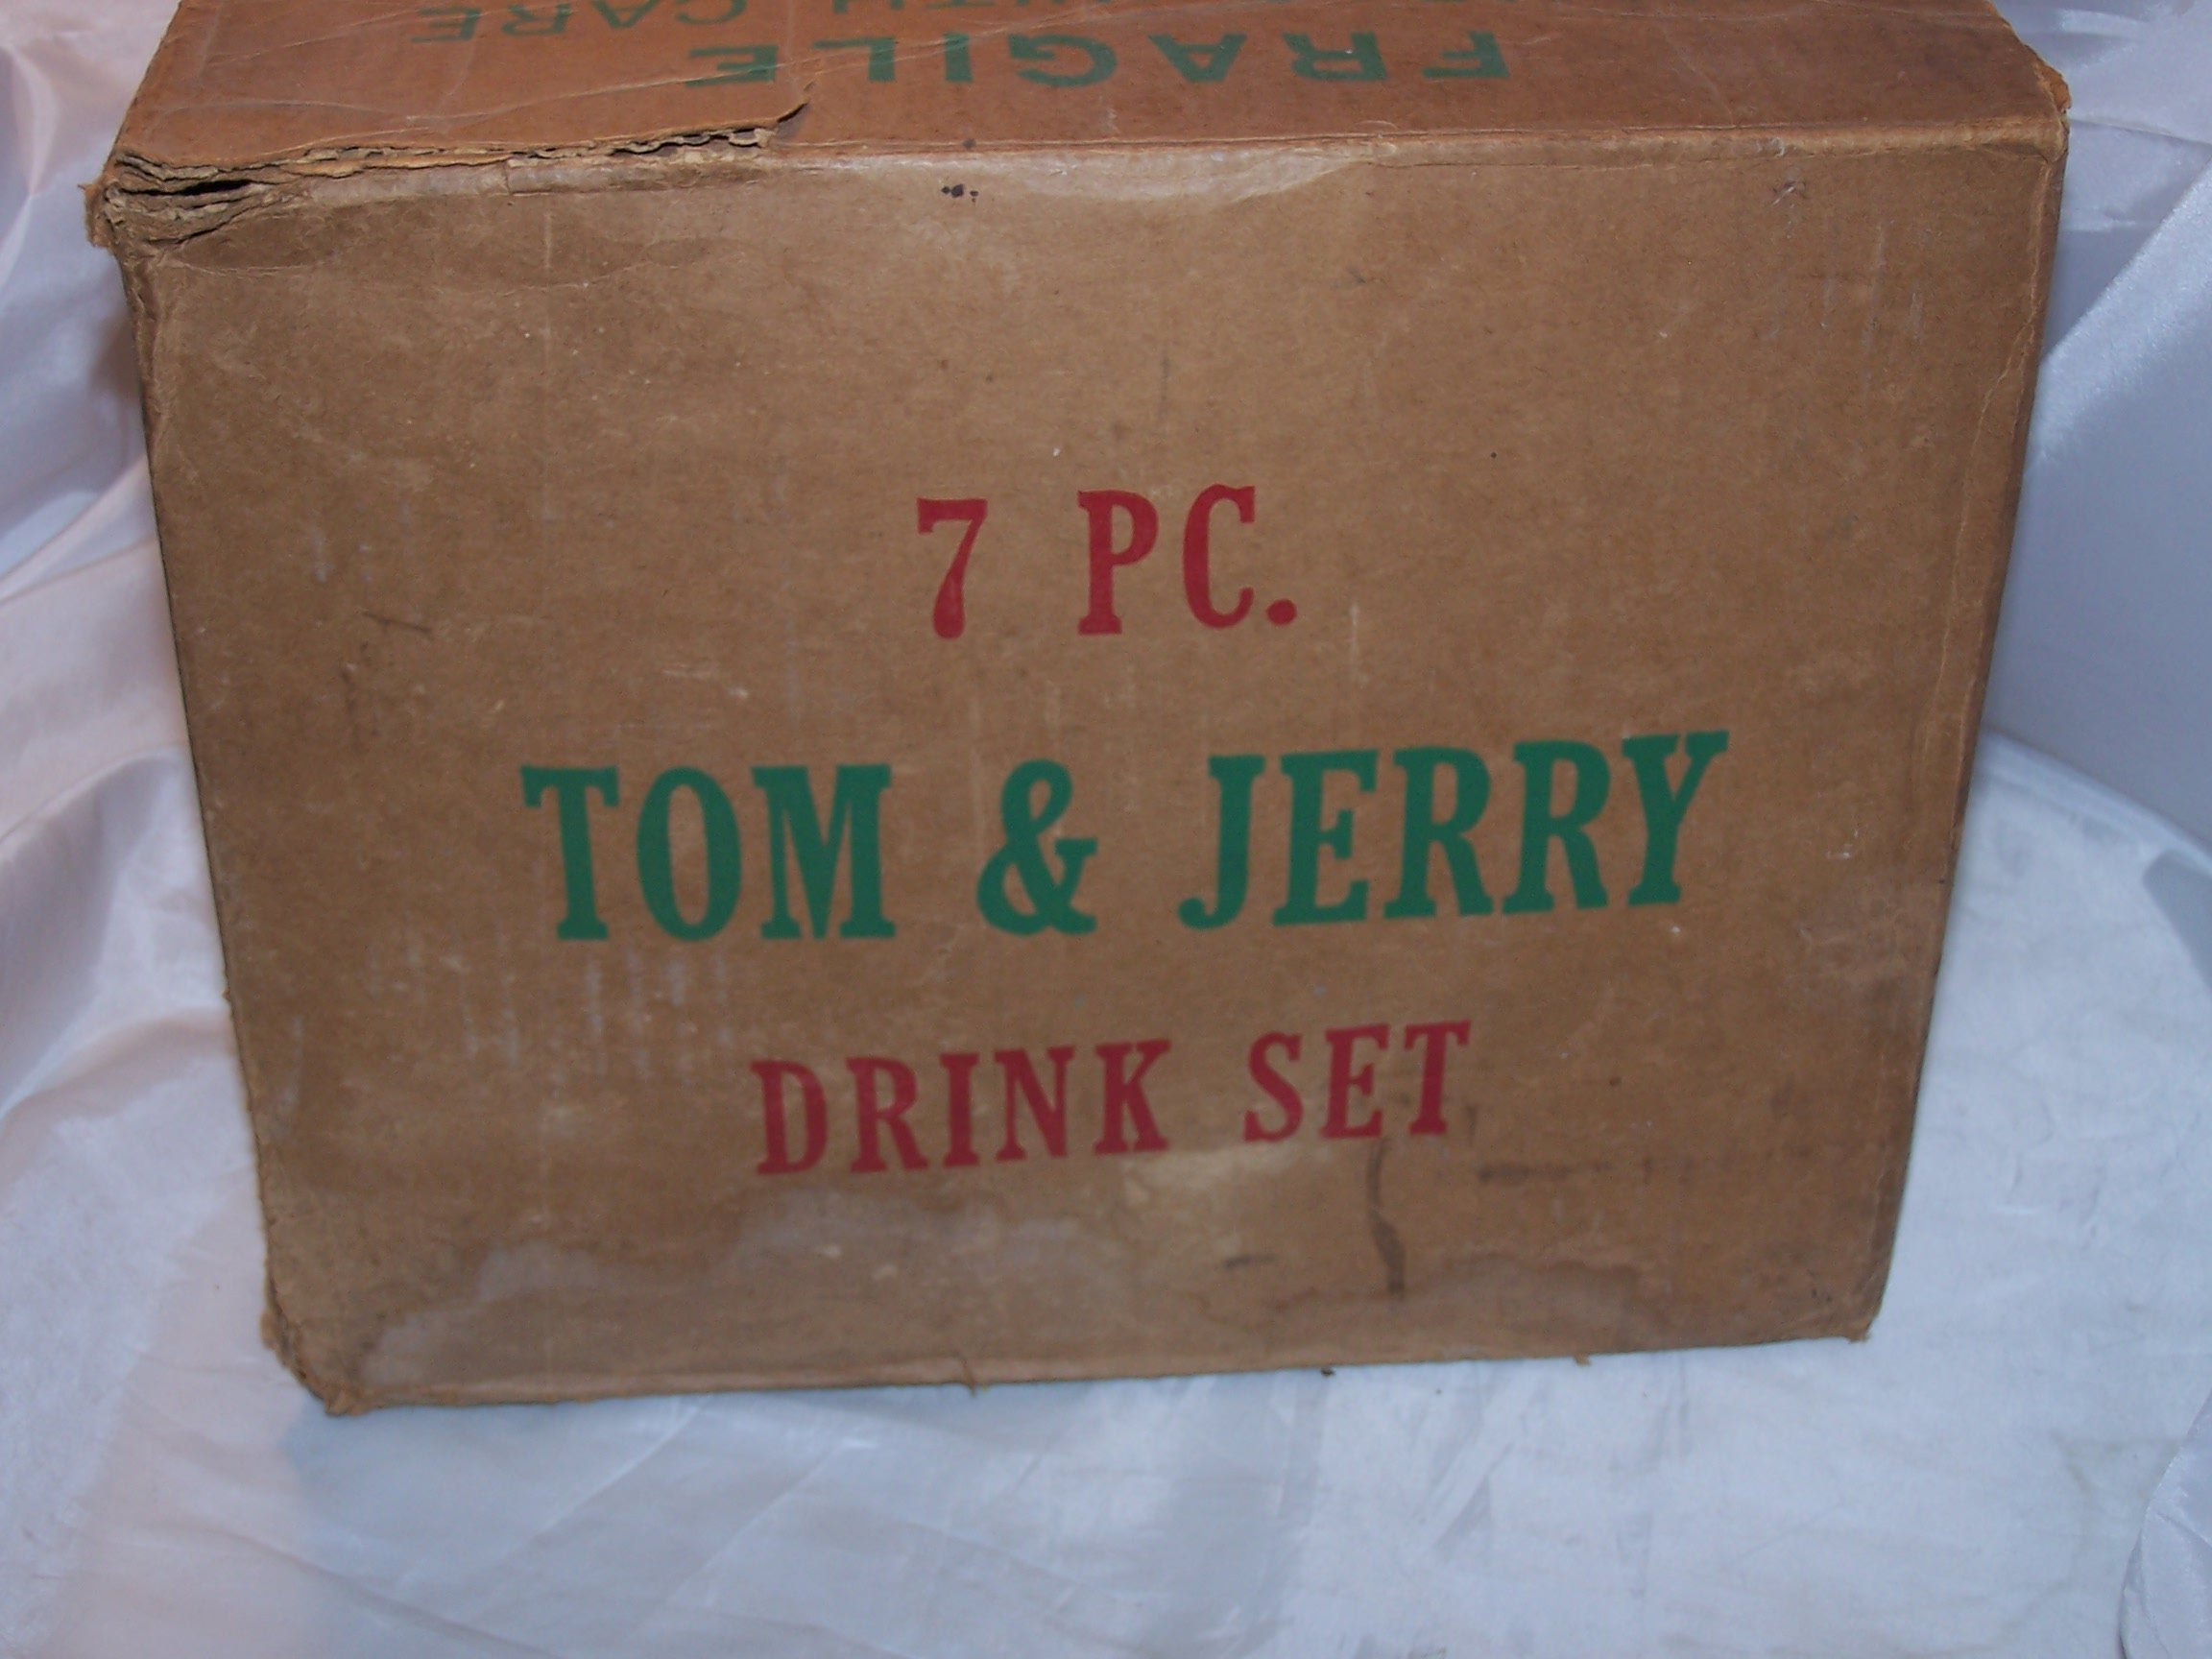 Original Box for Set